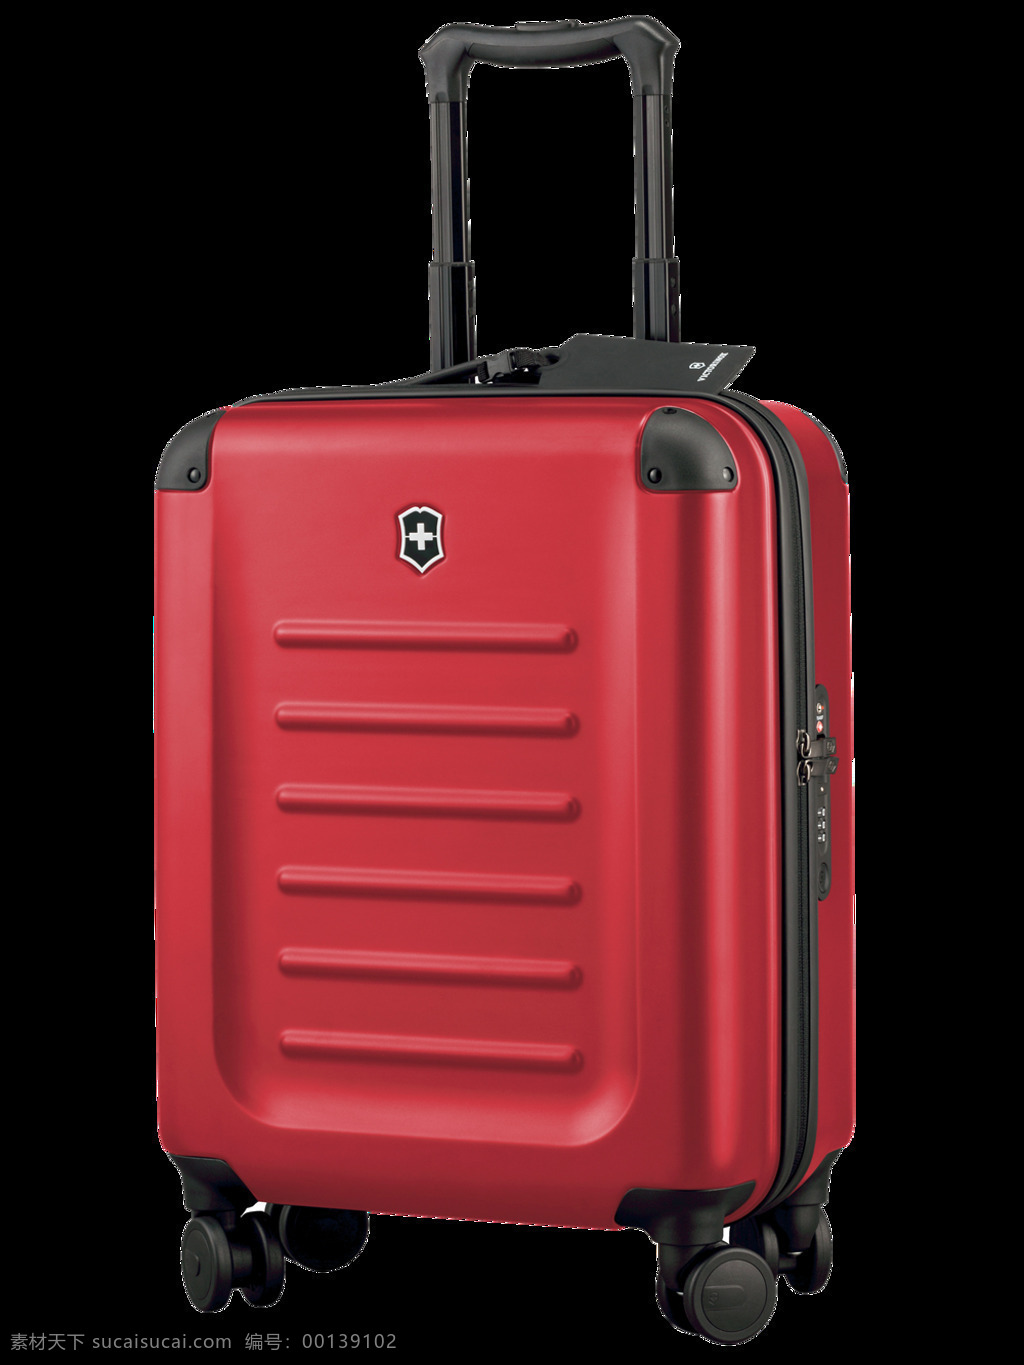 红色 塑料 行李箱 免 抠 透明 图 层 铝行李箱 塑料行李箱 旅行箱 提行李箱 衣物行李箱 帆布行李箱 真皮行李箱 拉杆行李箱 女士行李箱 行李箱素材